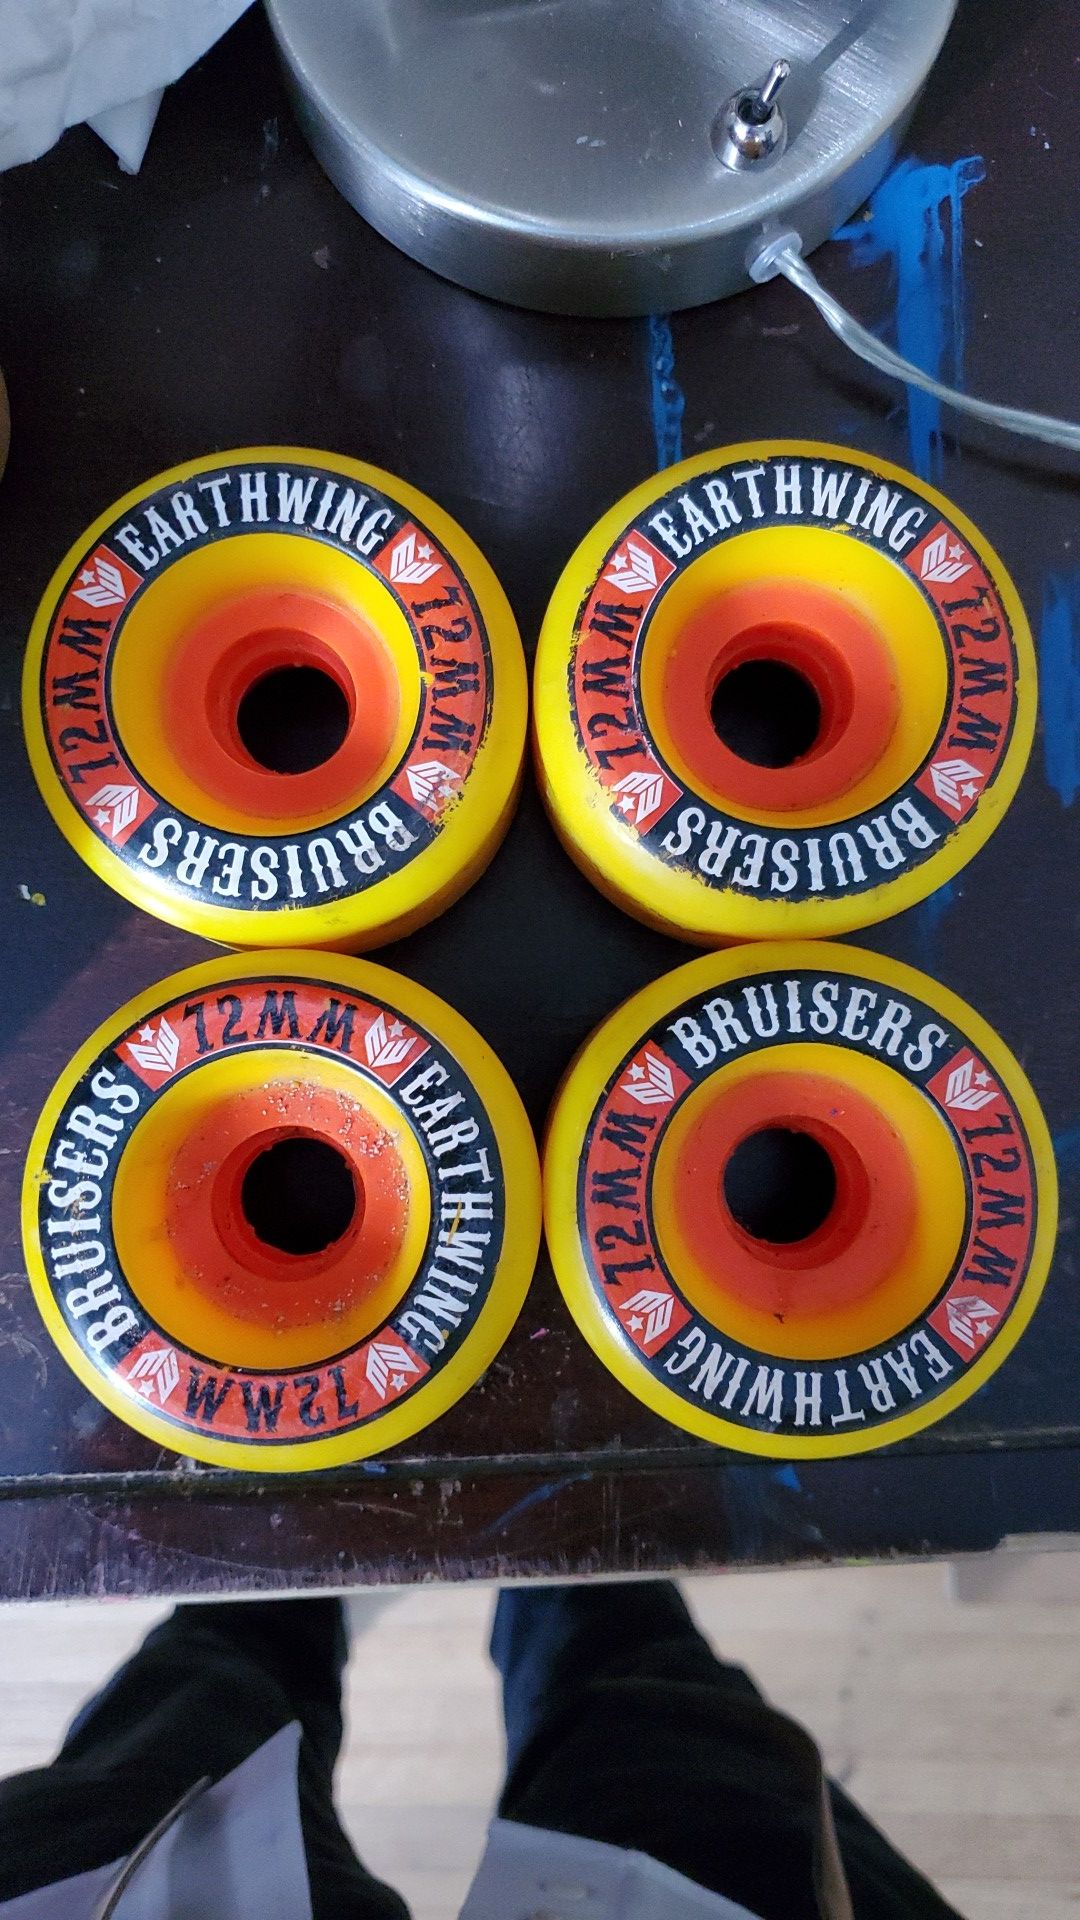 Earthwing bruisers 72mm 87a longboard wheels